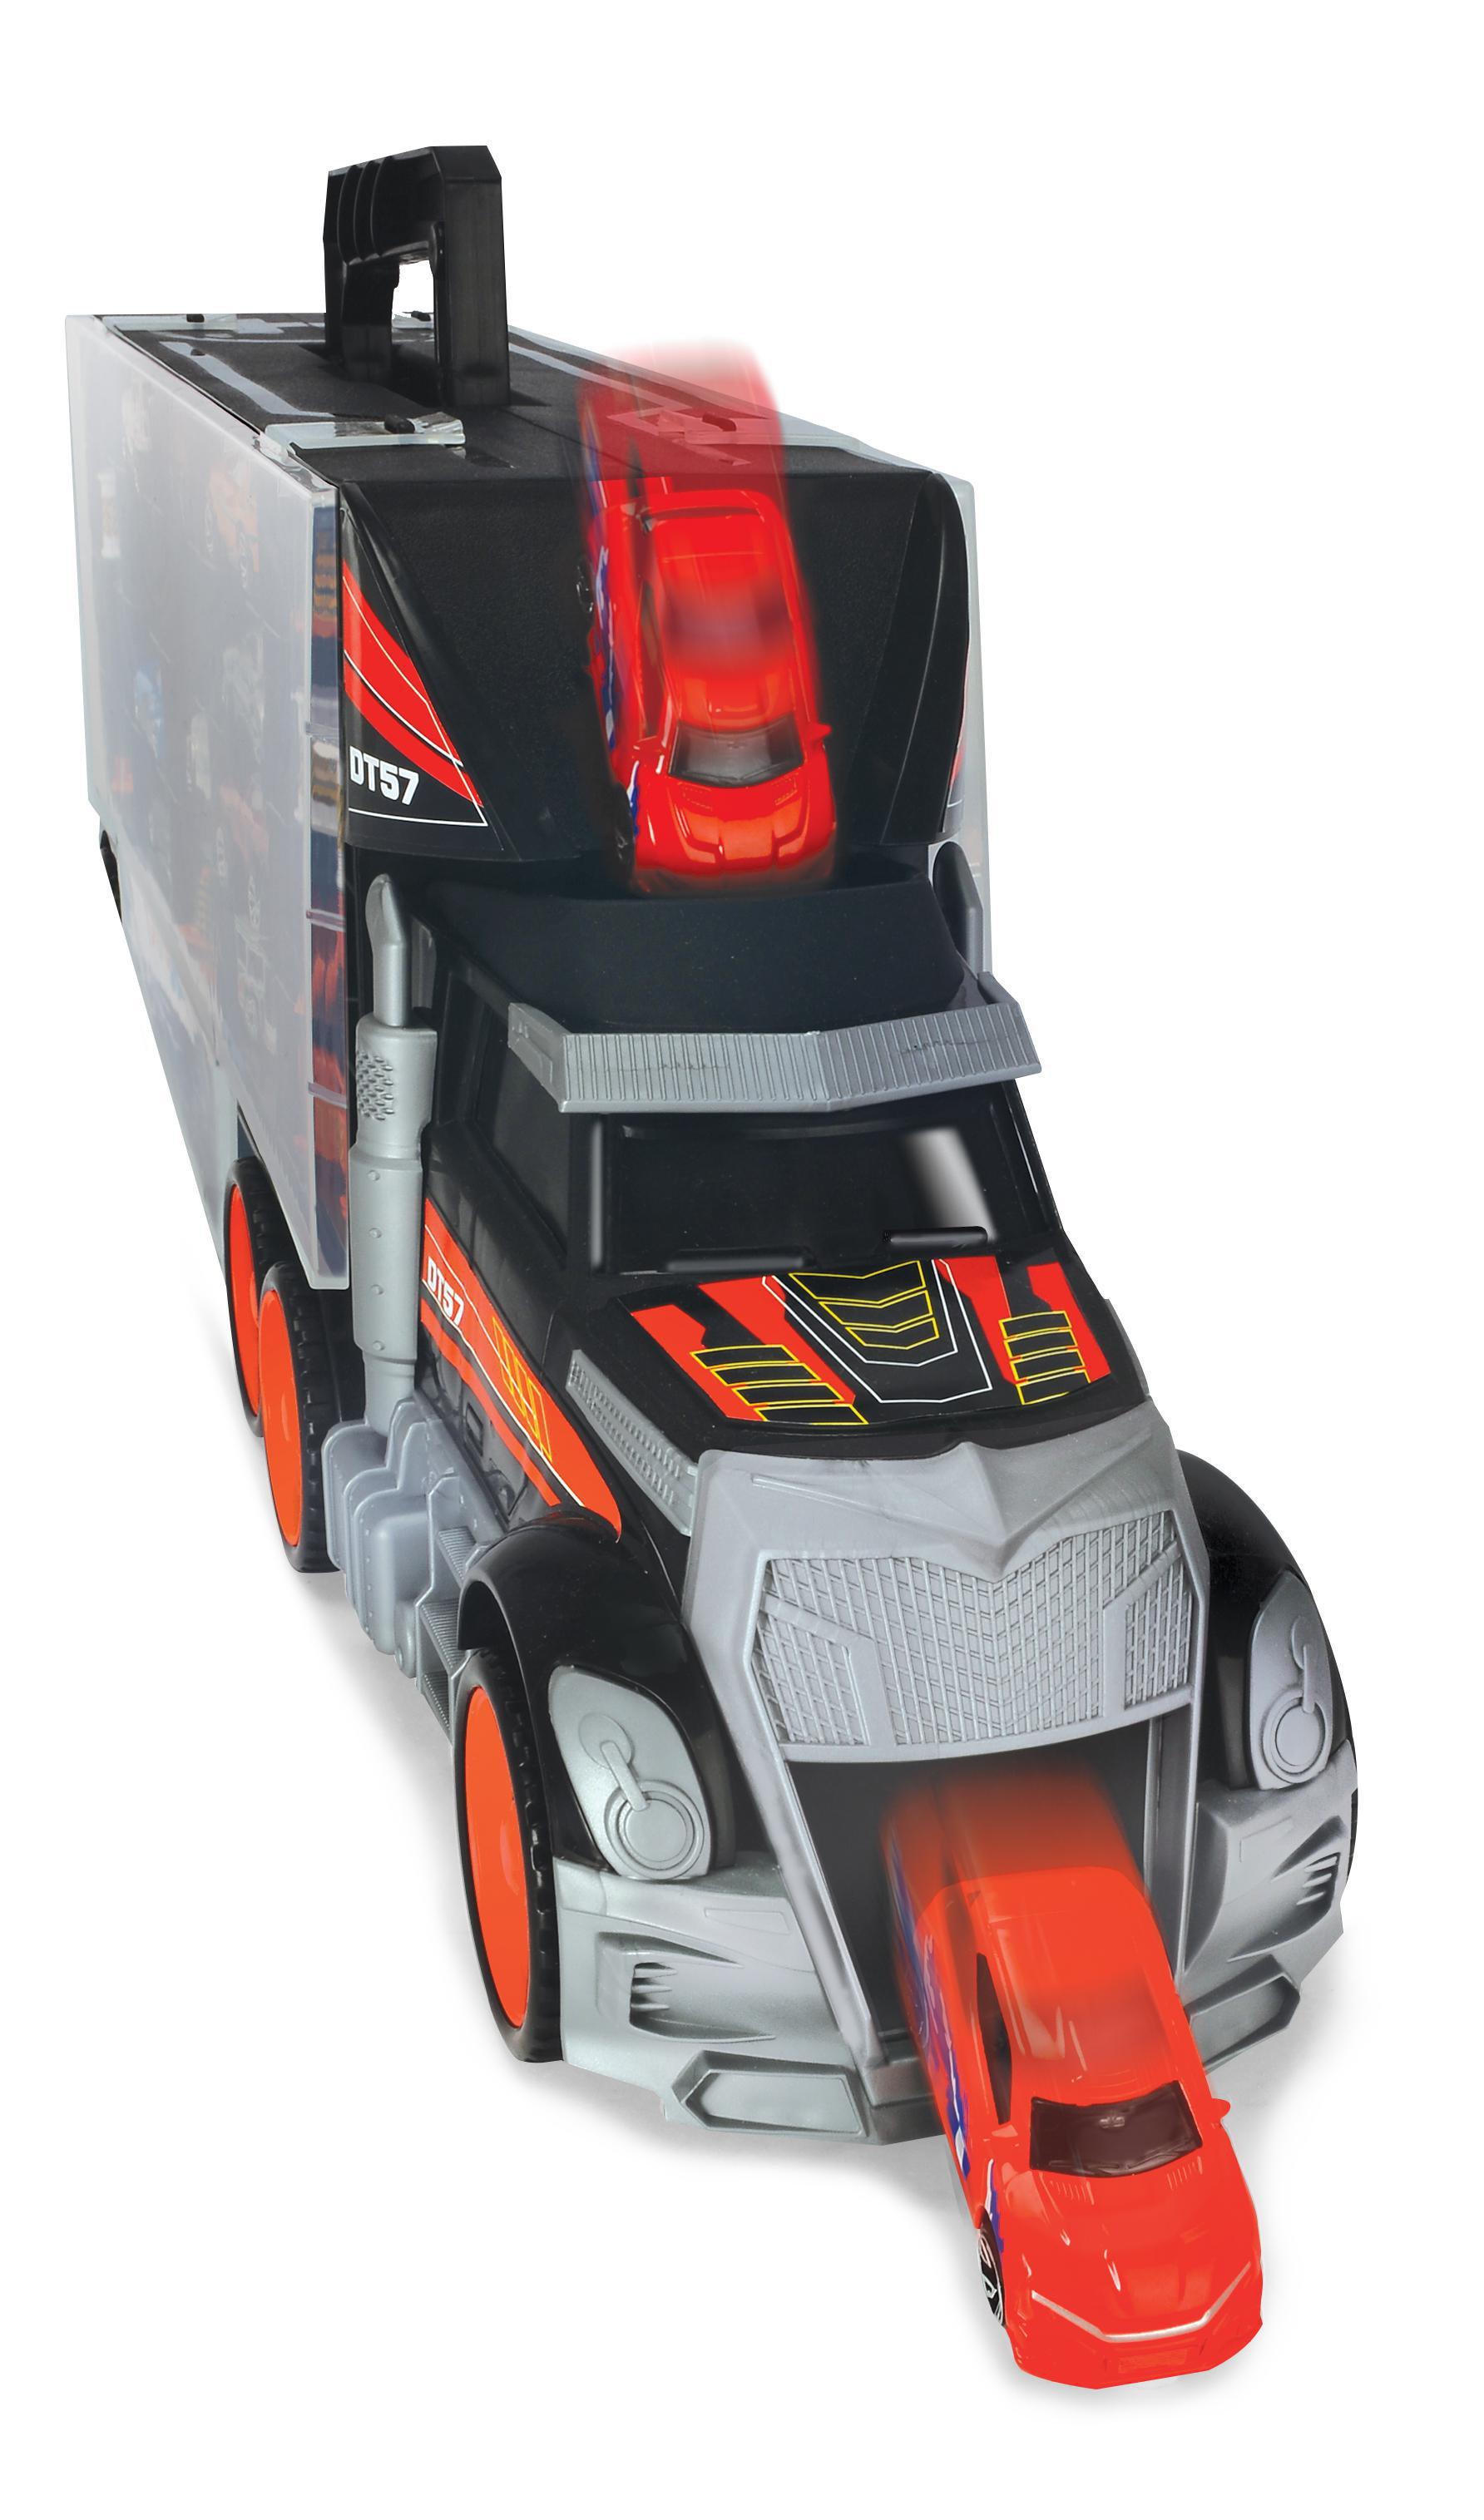 DICKIE-TOYS Truck Carry Case mit Mehrfarbig inklusive Zubehör Spielset 7 & Tragegriff, und Helikopter Spielzeugautos